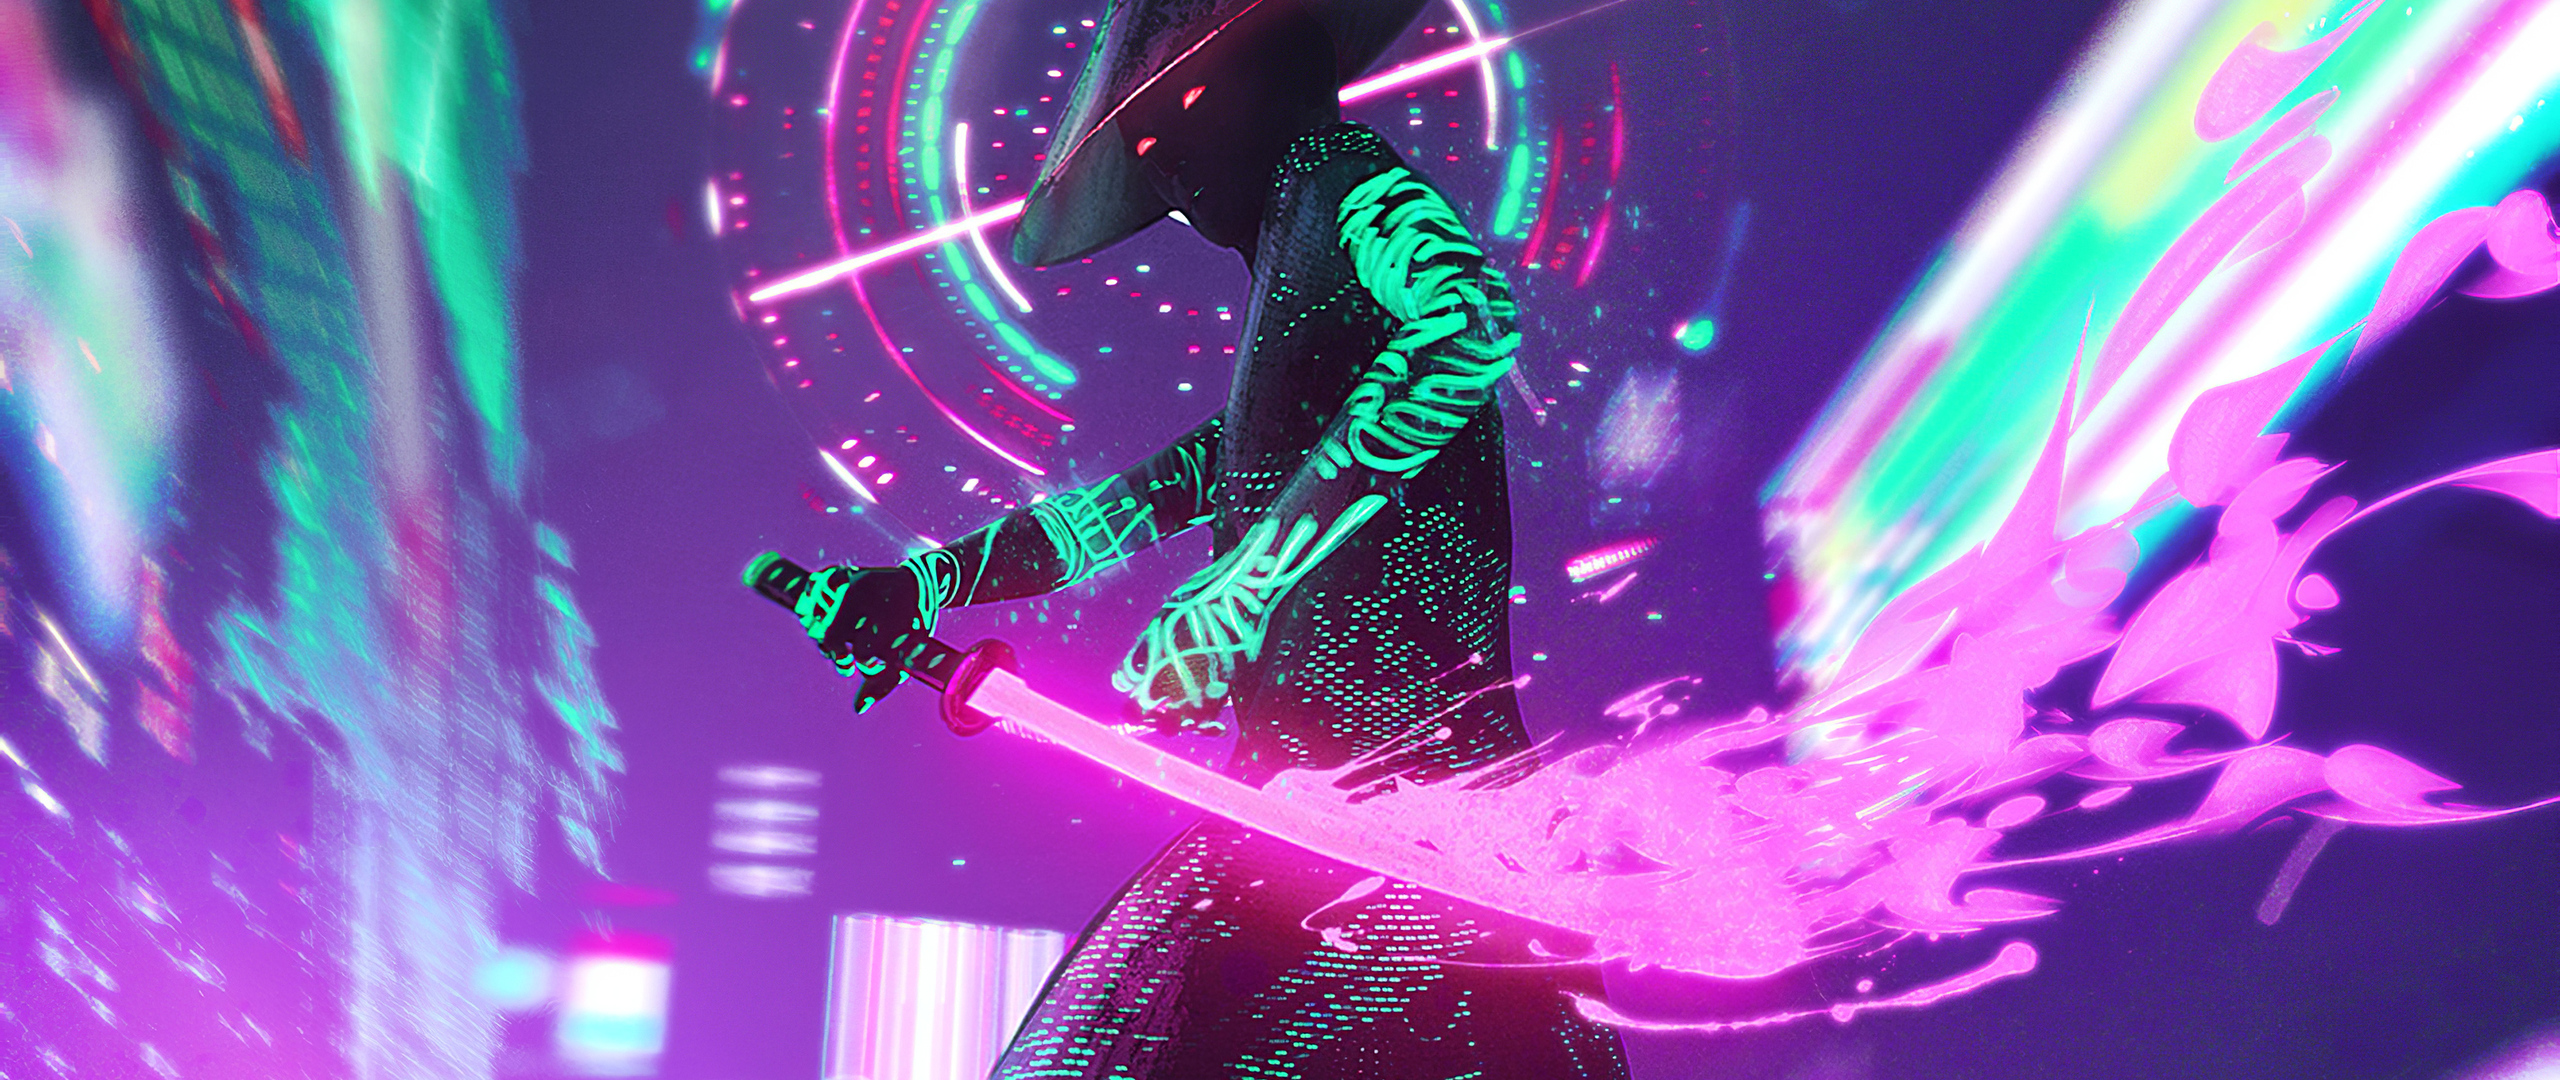 cyberpunk-neon-with-sword-4k-8k.jpg